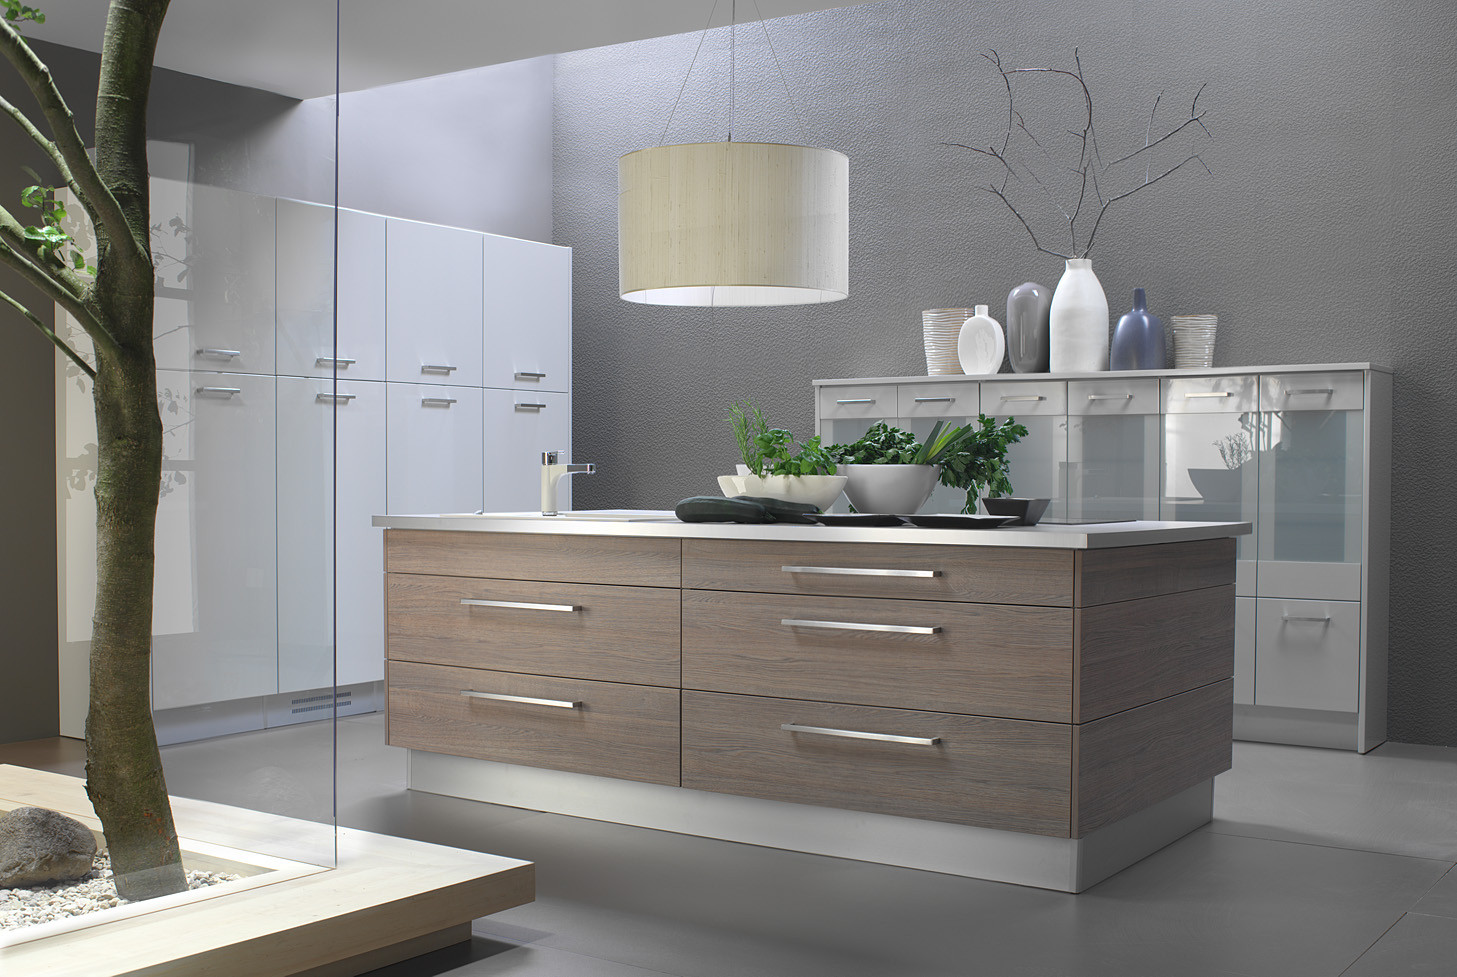 Kitchen Cabinet Doors
 Laminate kitchen cabinets design ideas